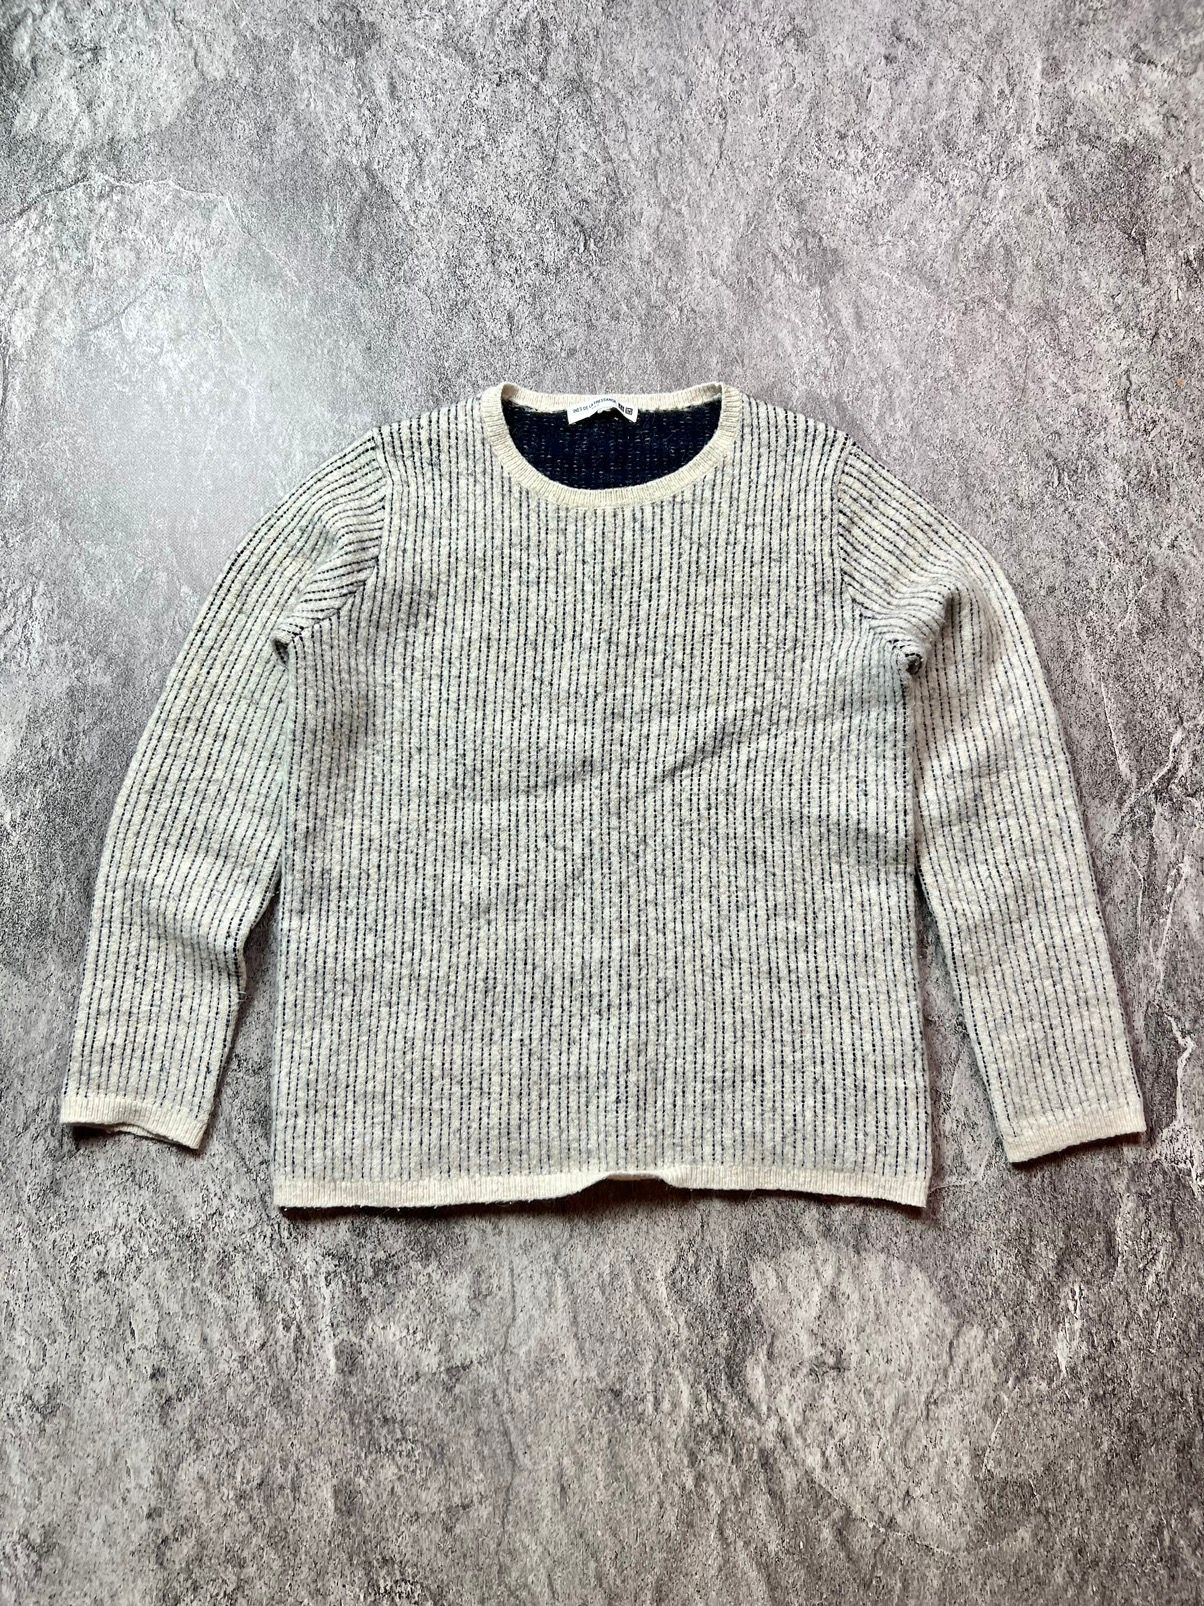 Pre-owned Uniqlo X Ines De La Fressange Wool Striped Designer Sweater In White